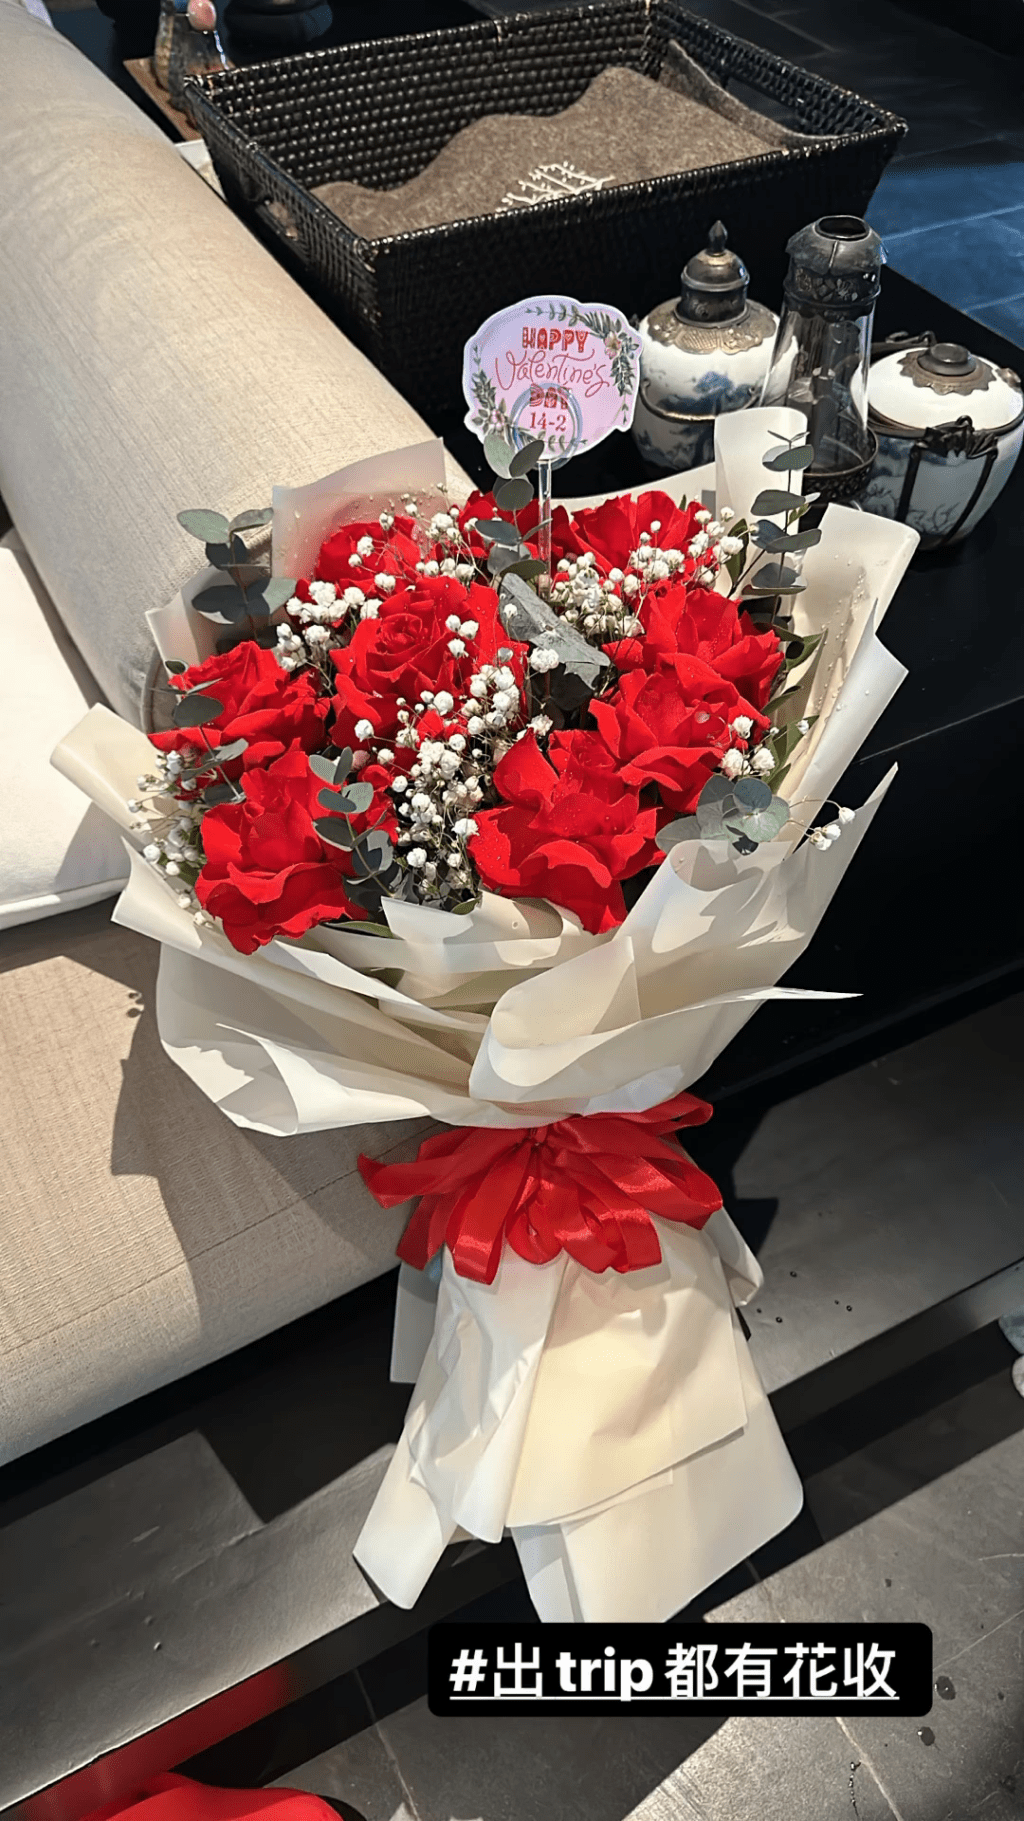 翁嘉穗贴出一束红玫瑰照，并冧爆写道：「出Trip都有花收。」相信是丈夫邬友正制造的浪漫惊喜。